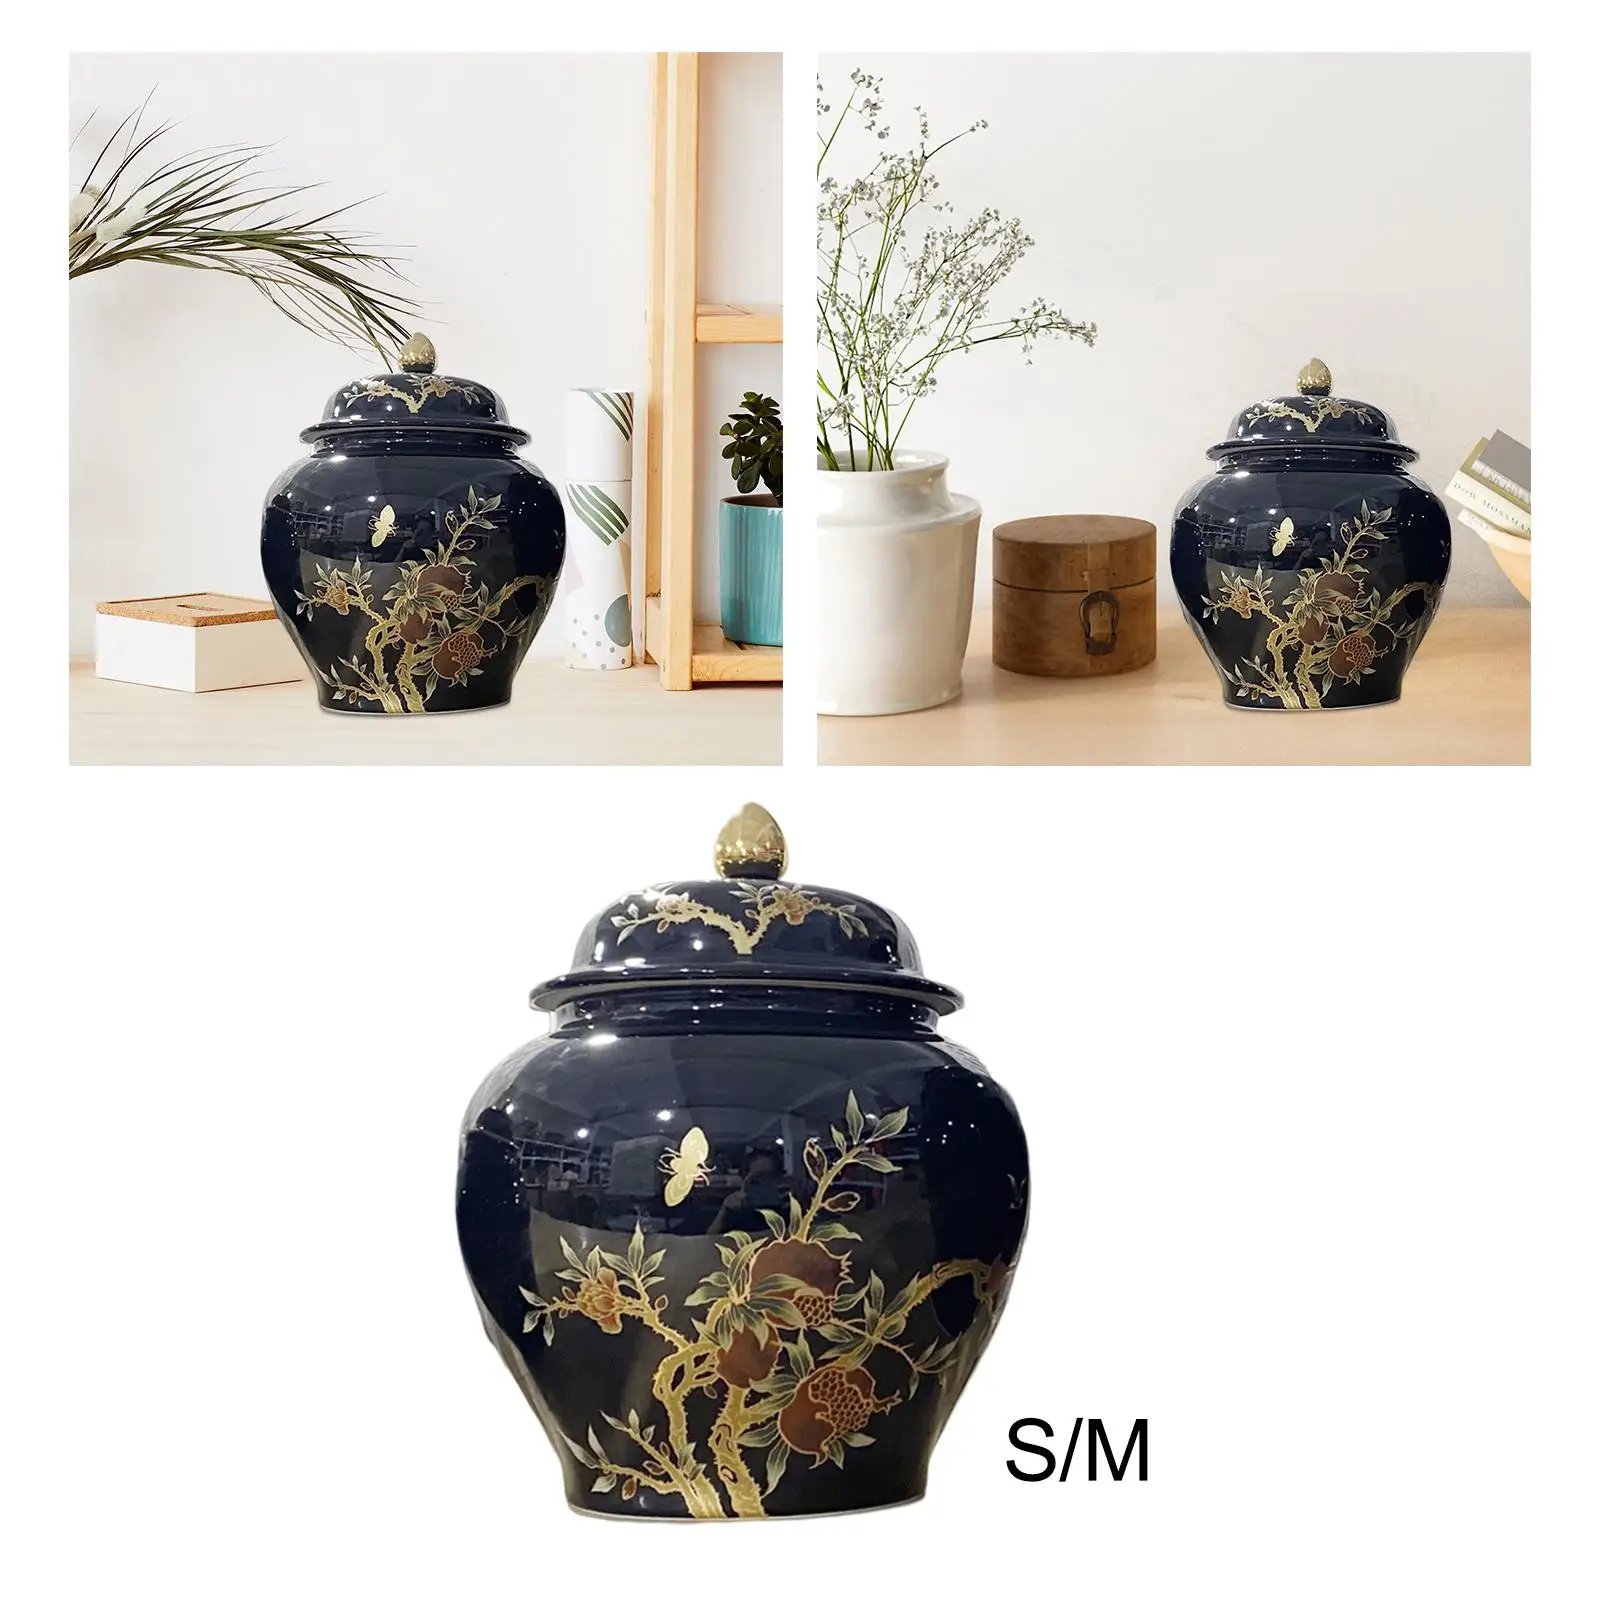 Porcelain Ginger Jar Tea Storage Jar Plants Holder Floral Arrangement Ornaments for Home Bookshelf Party Livingroom Decoration